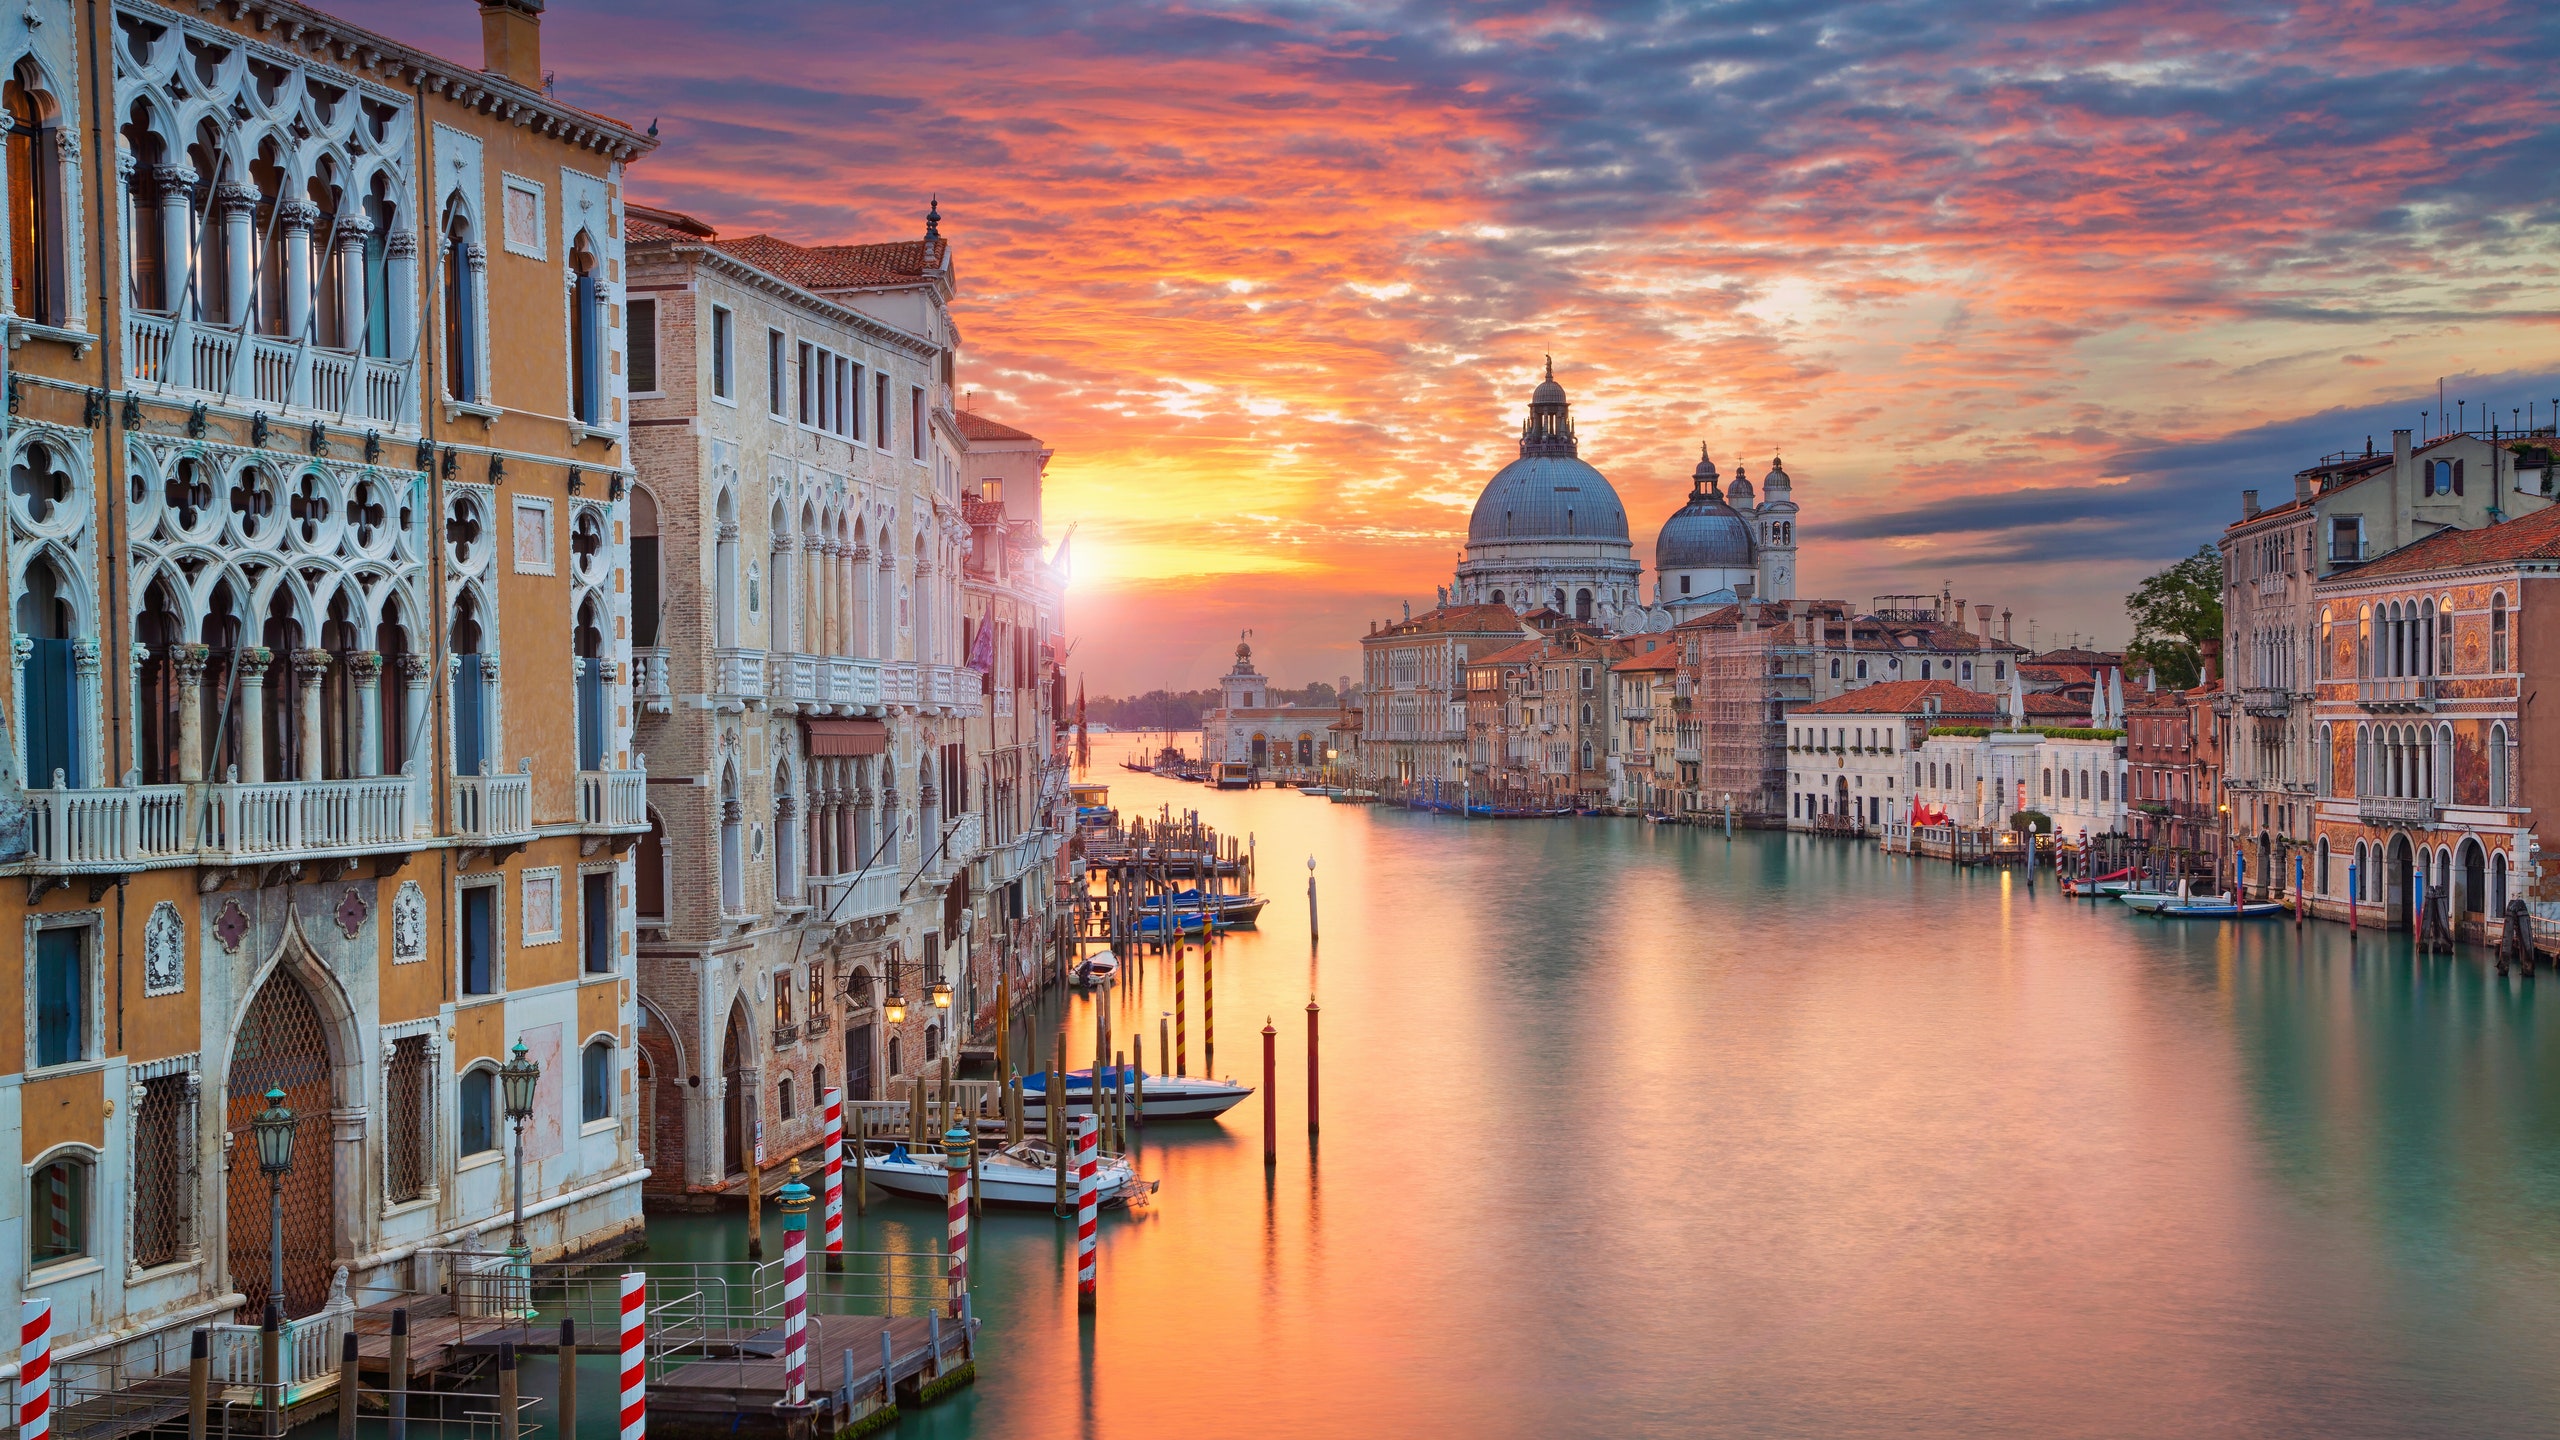 Путешественникам на заметку с 2020 года за въезд в исторический центр Венеции будет взиматься плата